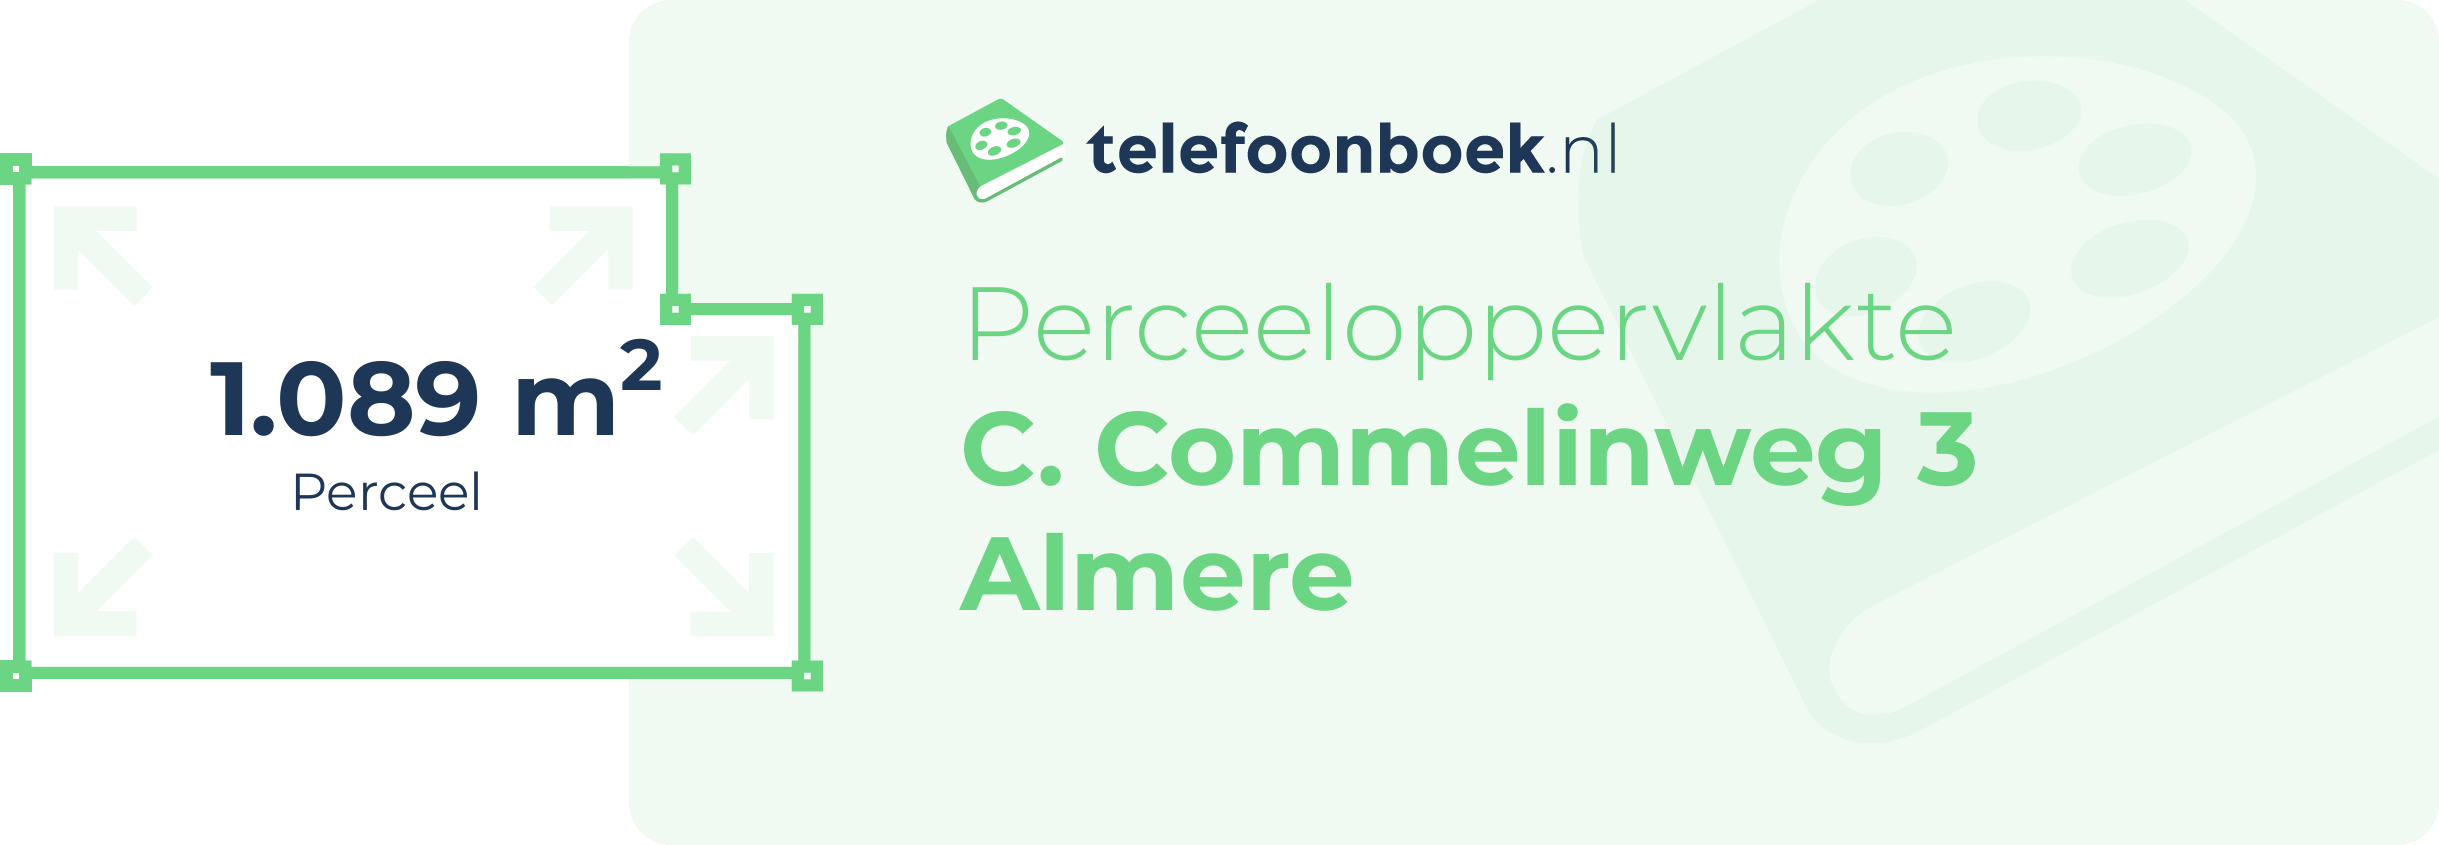 Perceeloppervlakte C. Commelinweg 3 Almere